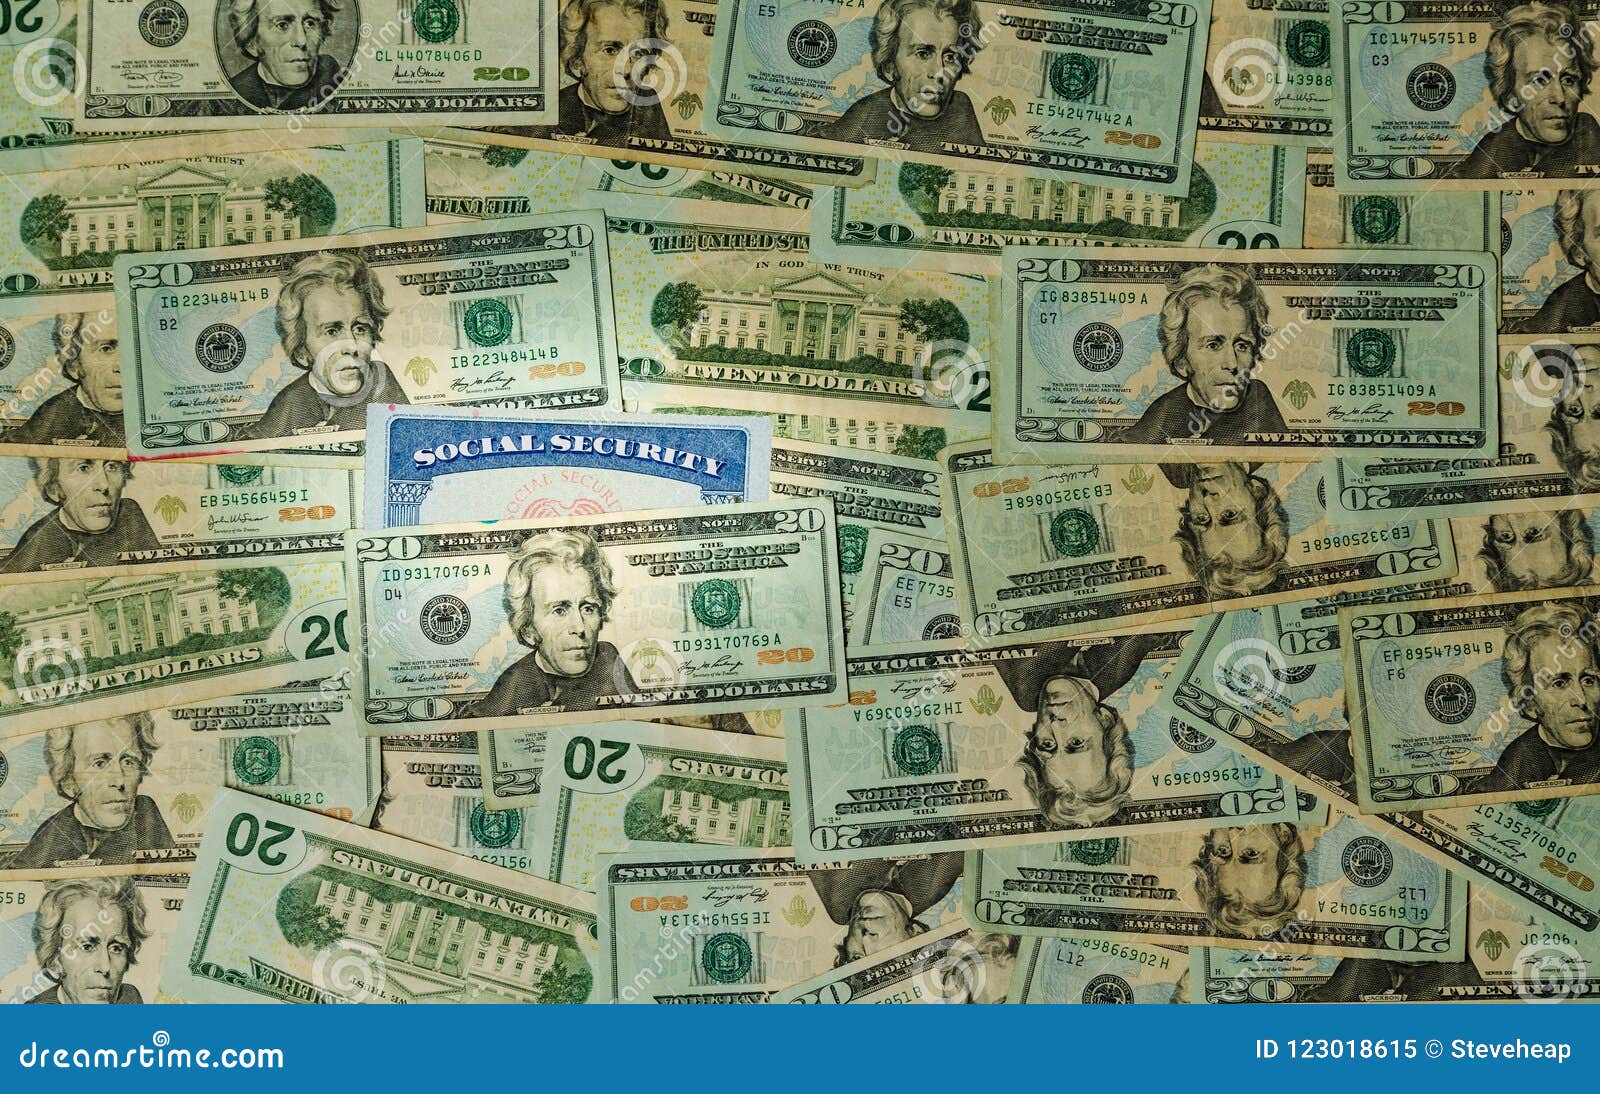 Social Security Card among Thousands of US Dollar Bills Stock Image